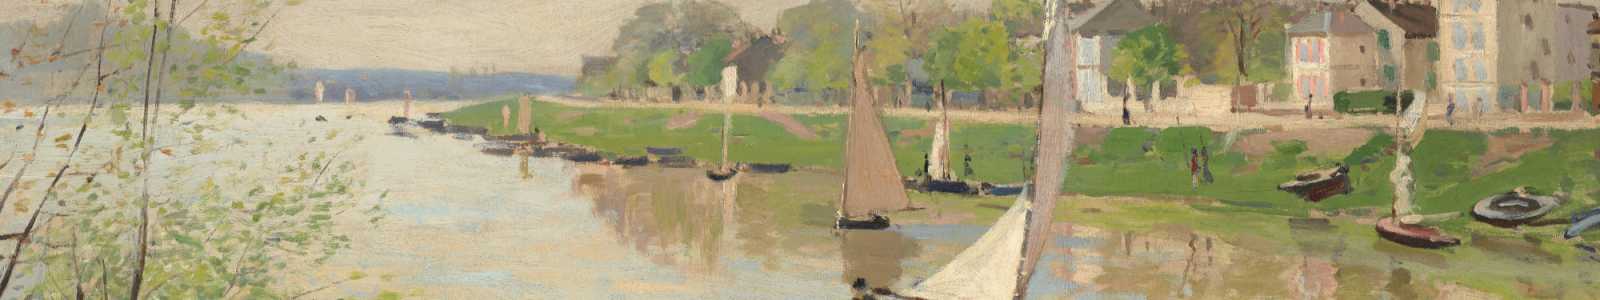 The Cox Collection: Die Geschichte des Impressionismus, Abendverkauf